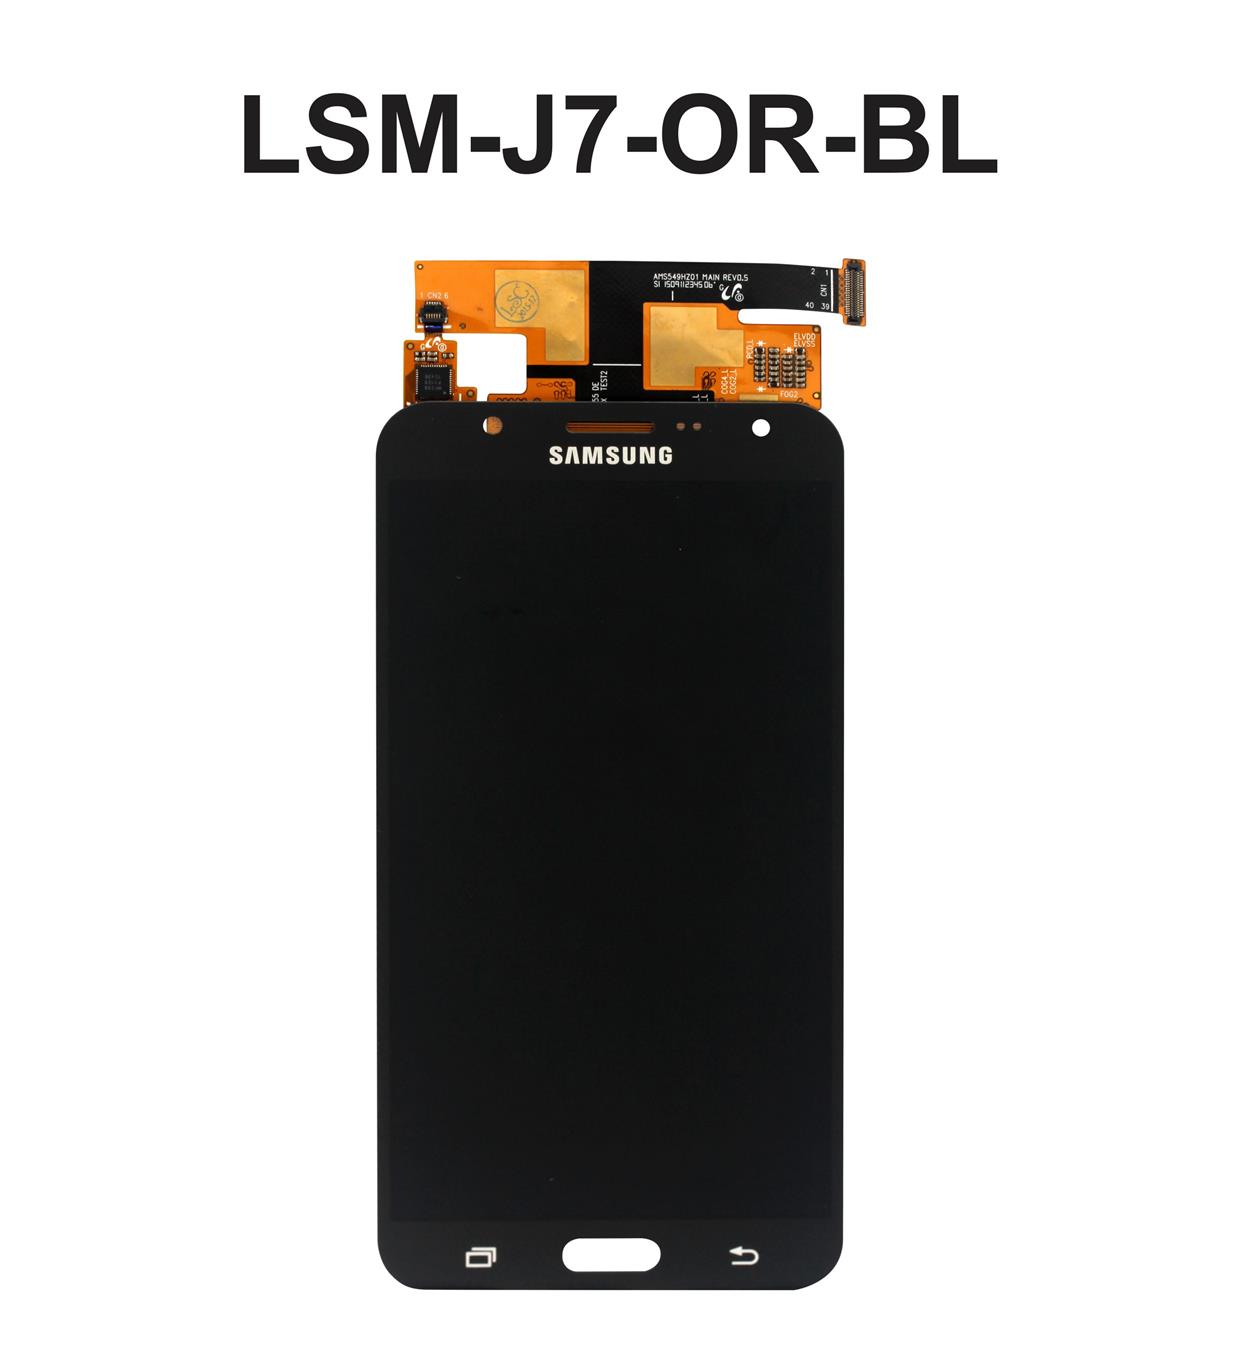 LCD Screen Digitizer Samsung Galaxy End 7 15 2019 1227 PM